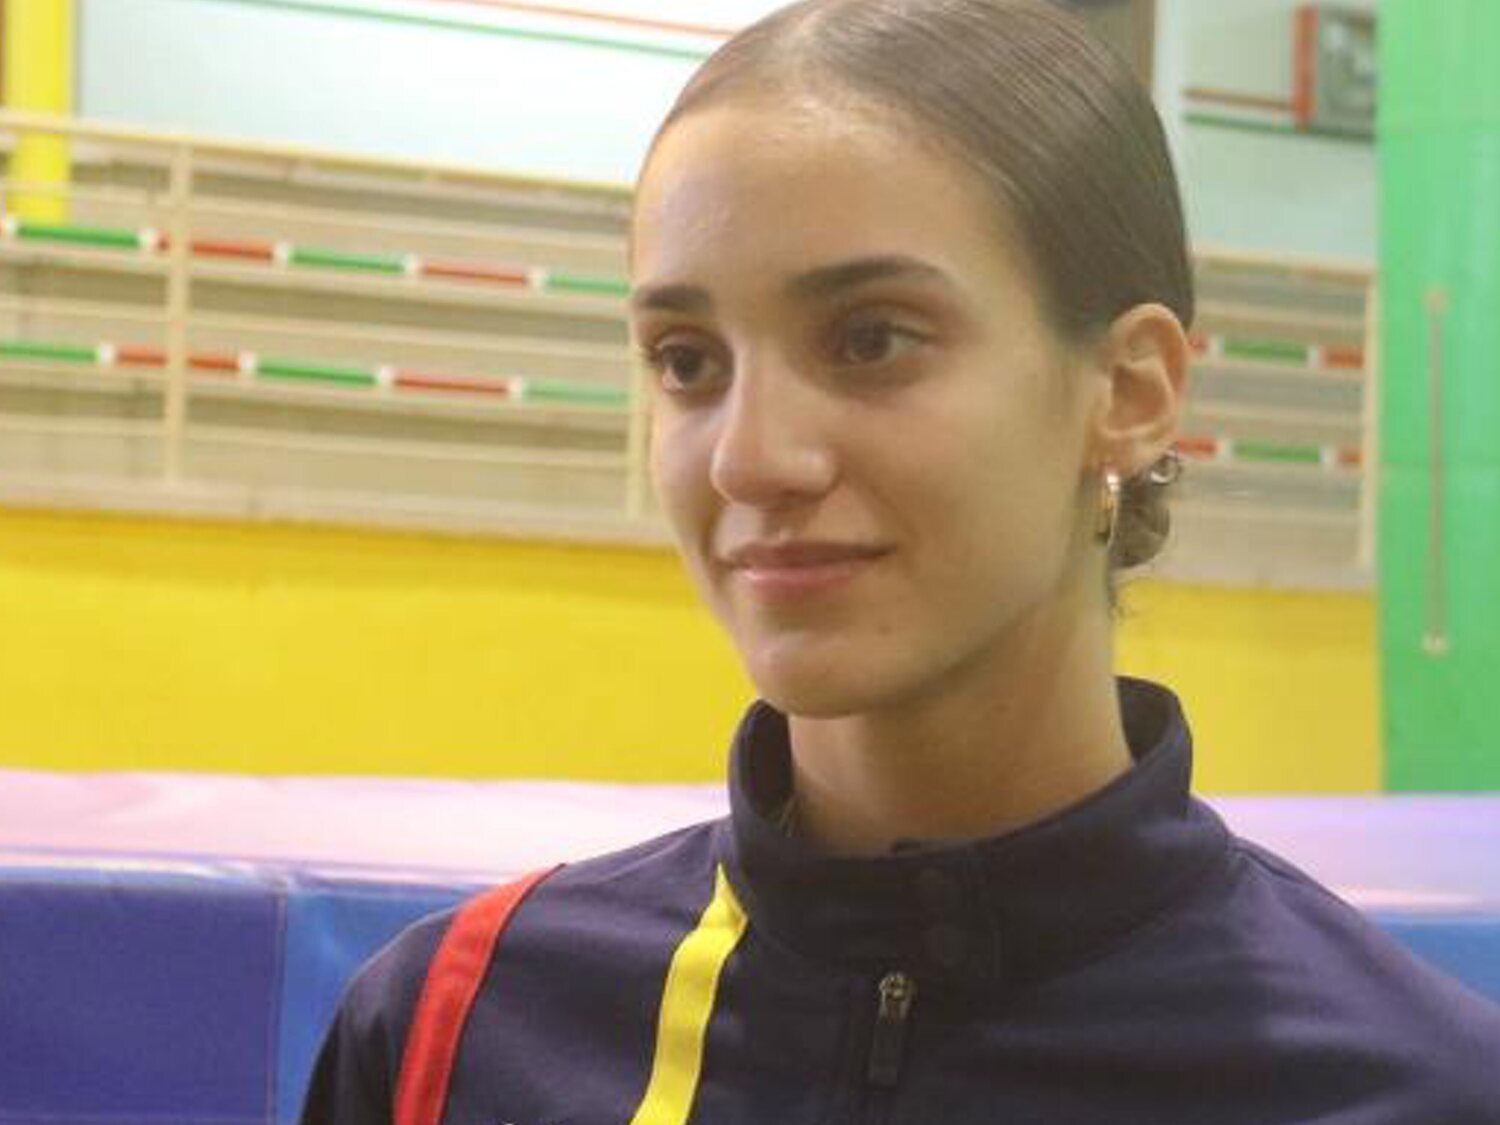 Muere a los 17 años la gimnasta María Herranz